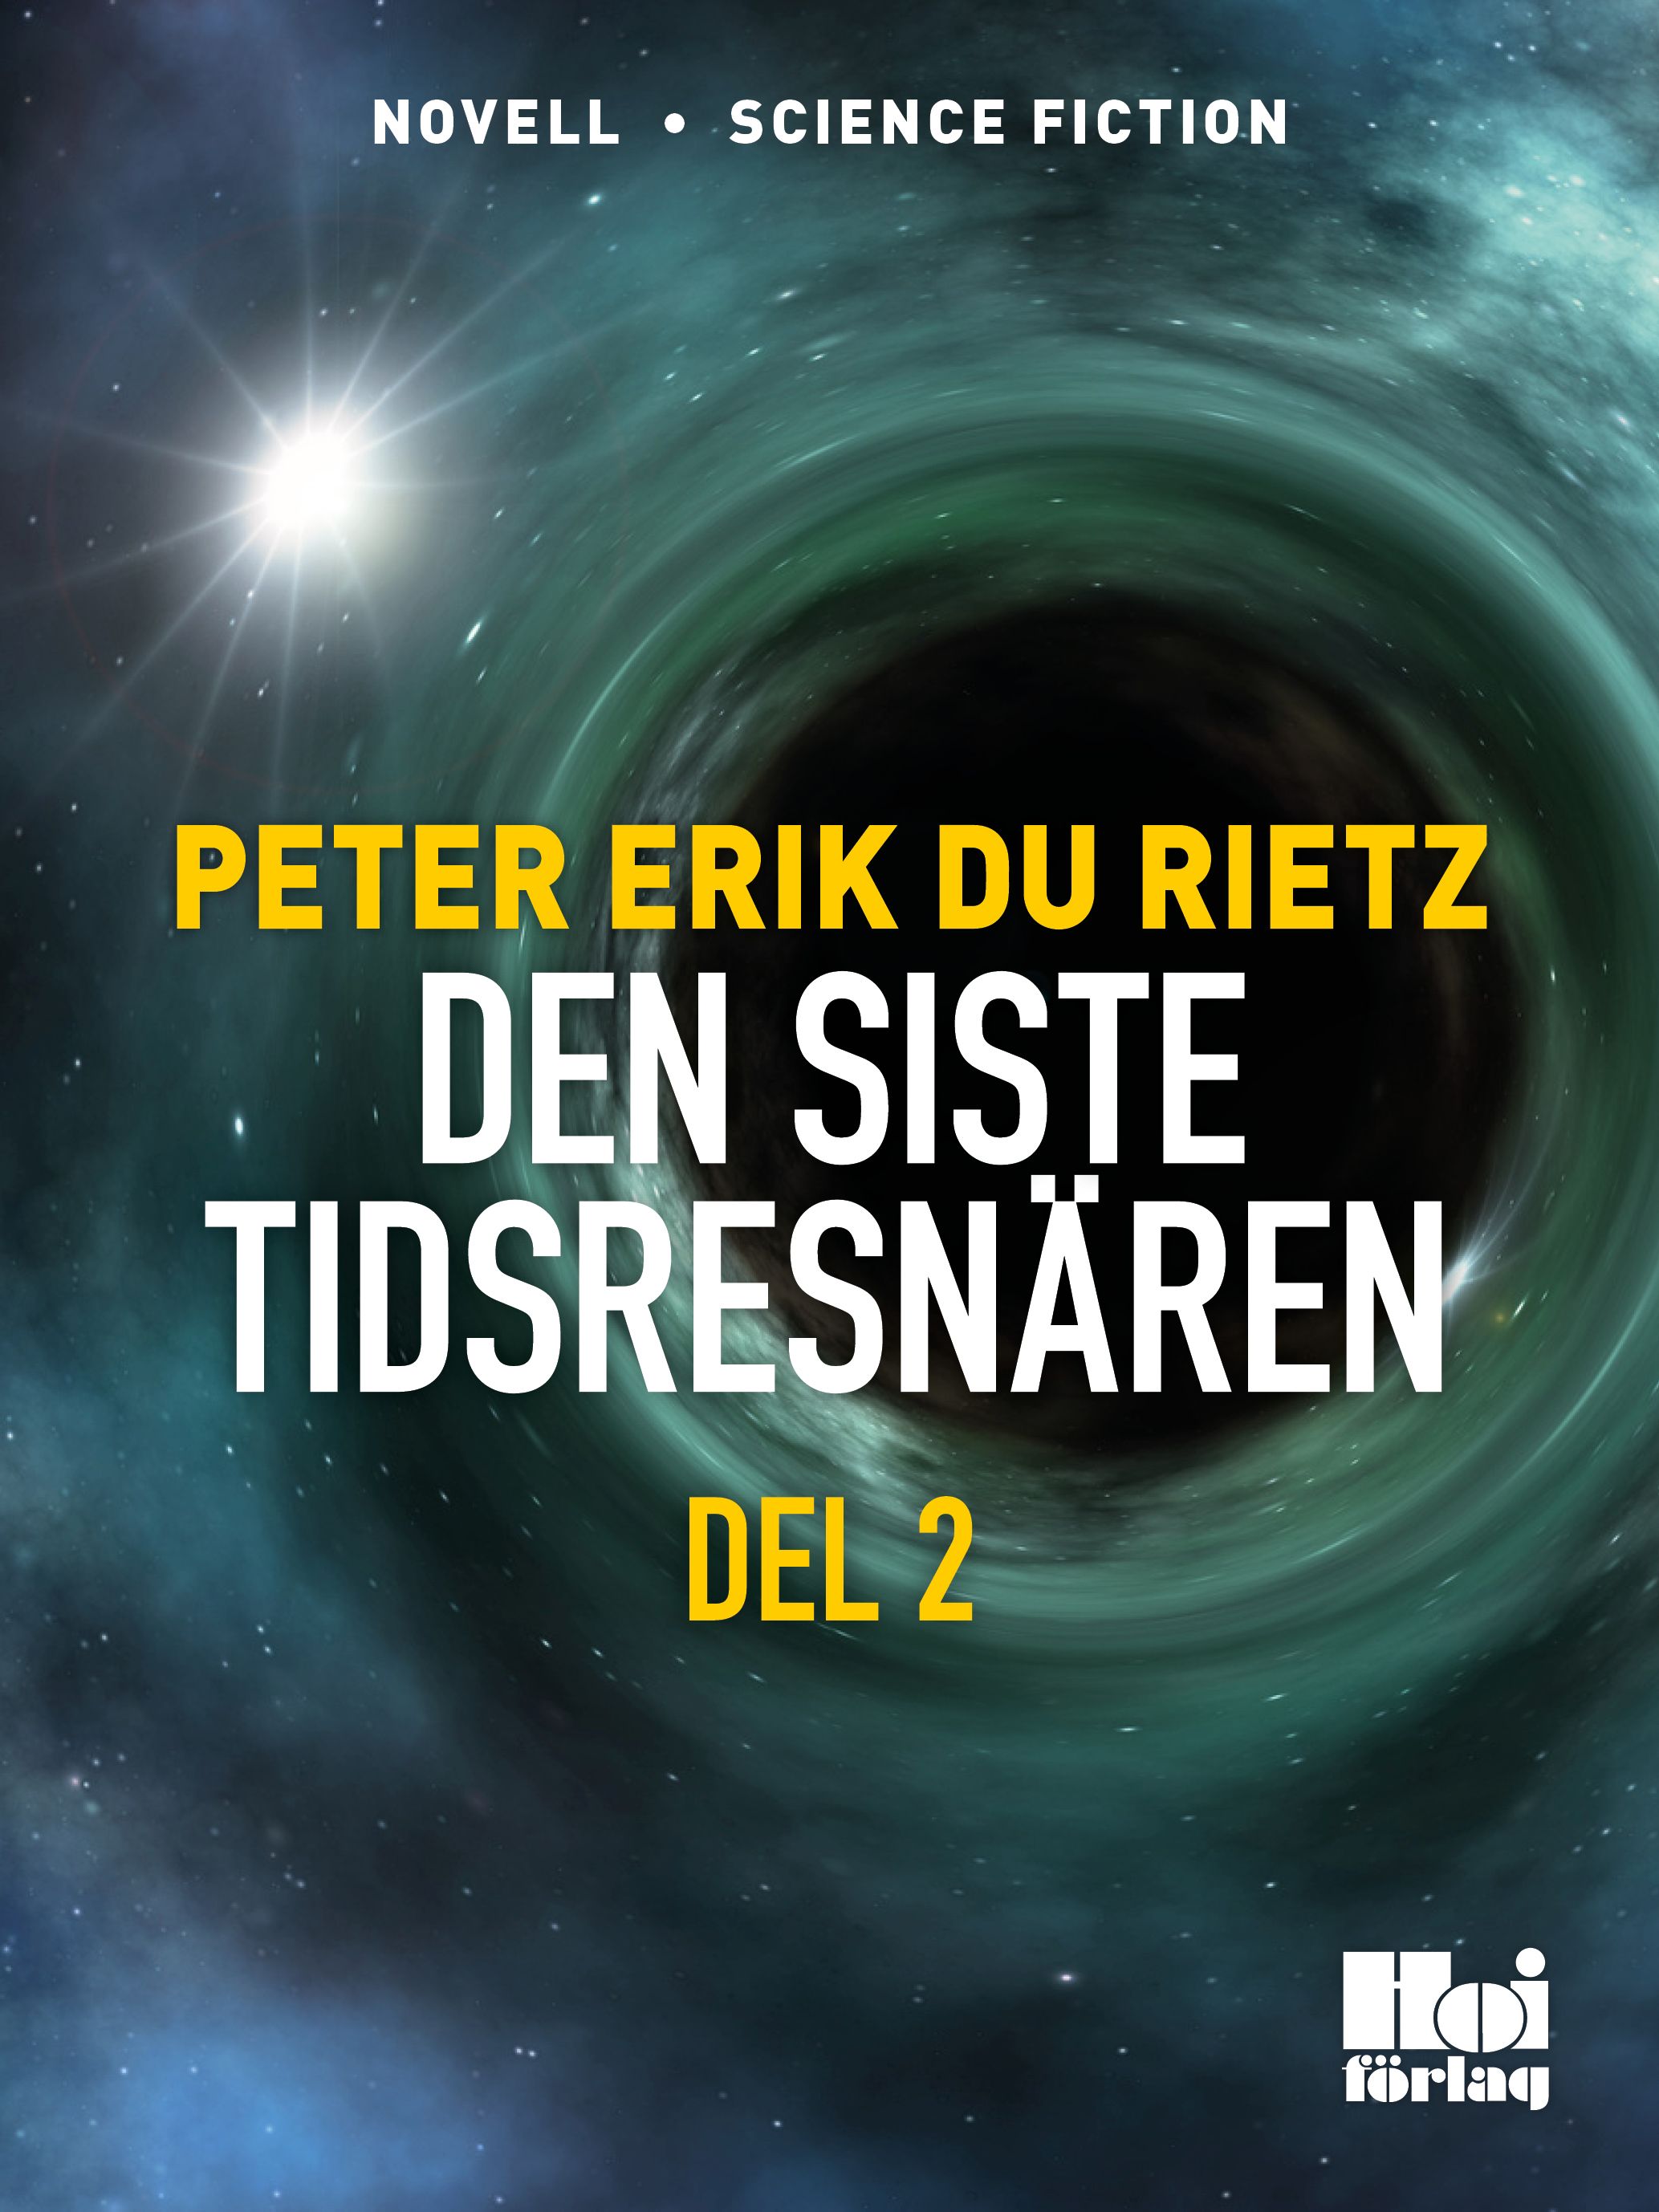 Den siste tidsresenären del 2, e-bok av Peter Erik Du Rietz